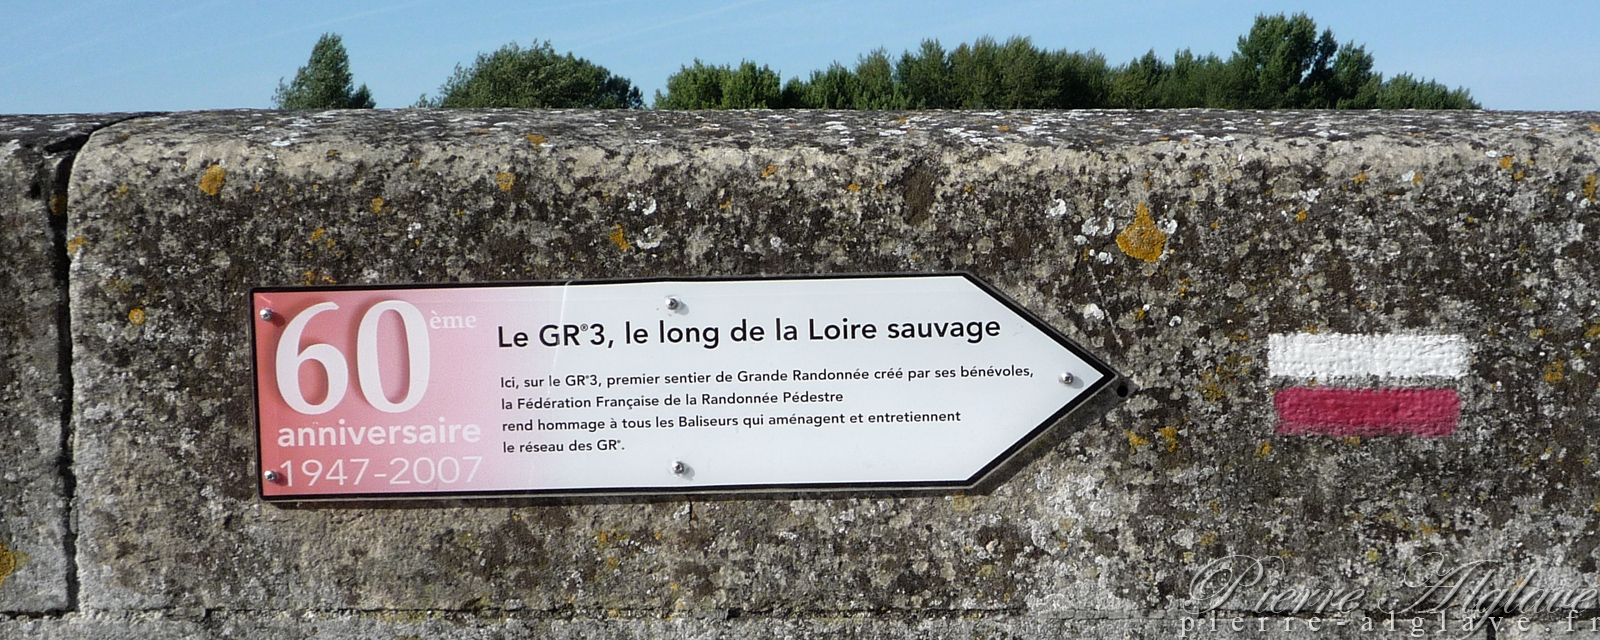 En remontant la Loire par le GR3